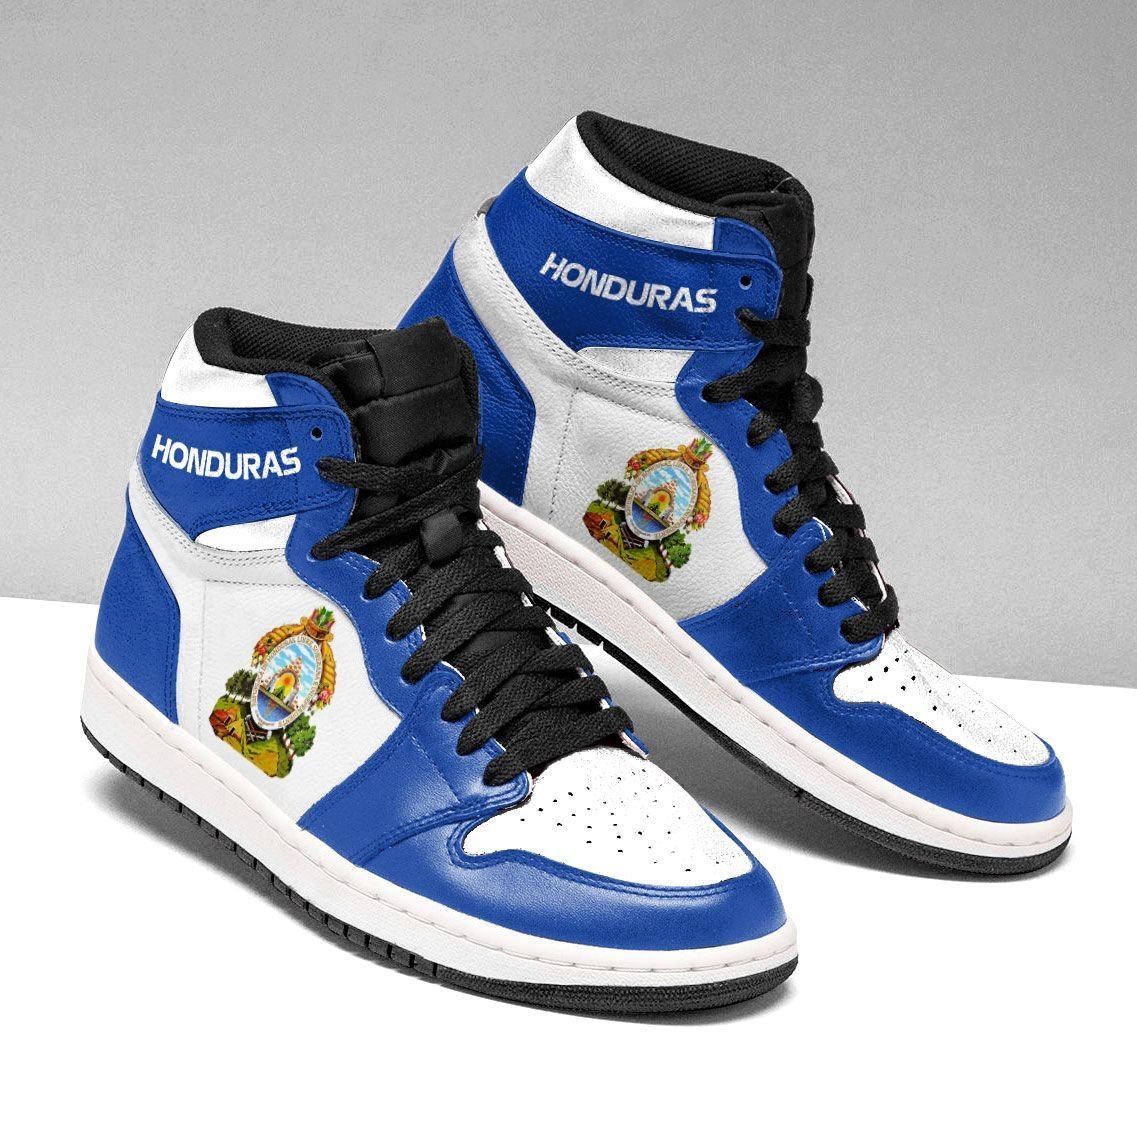 HOT-Honduras-High-Top-Personalized-Air-Jordan-Sneakers